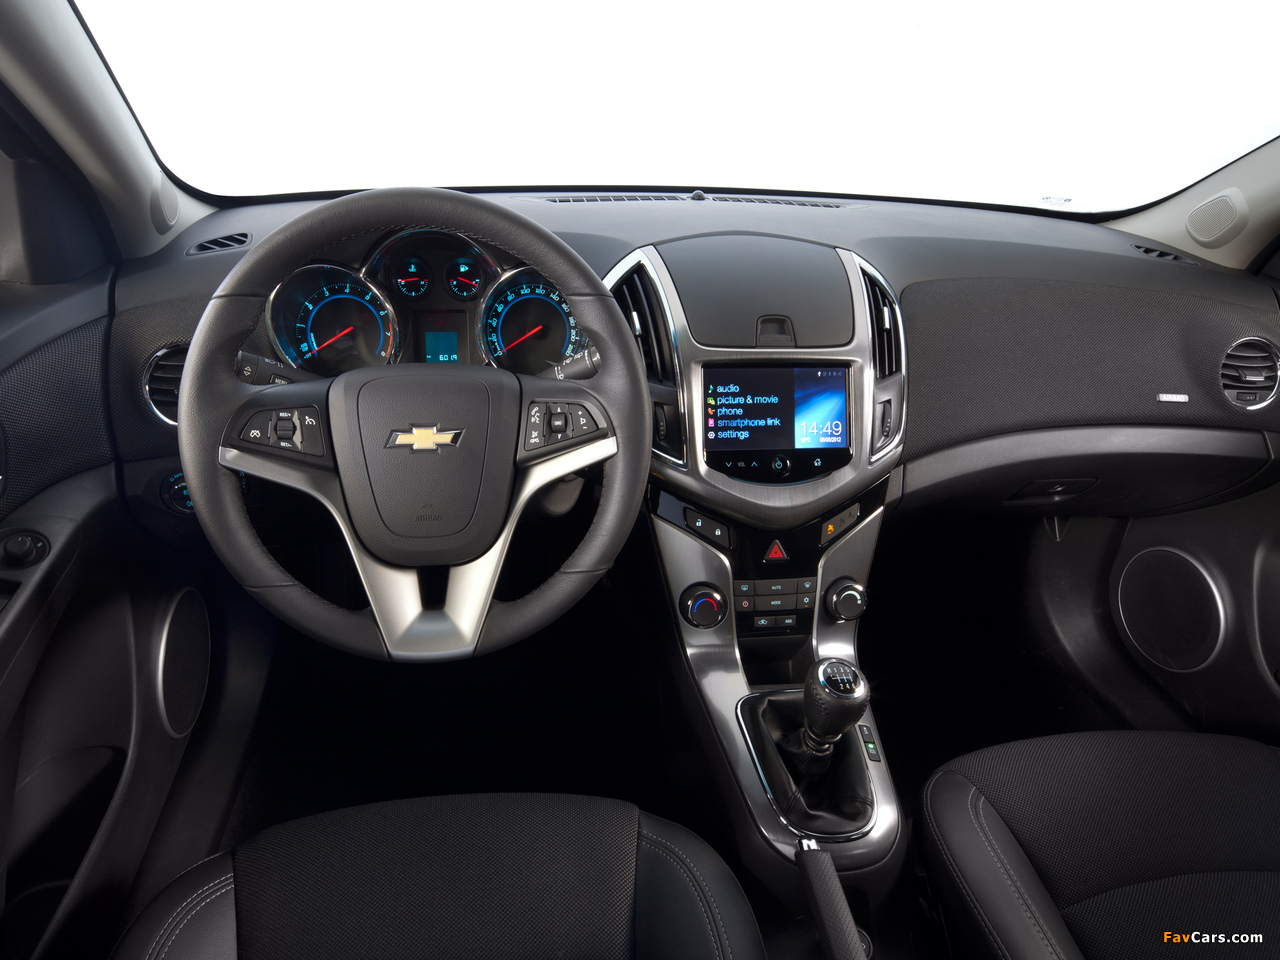 Chevrolet Cruze Hatchback (J300) 2012 images (1280 x 960)